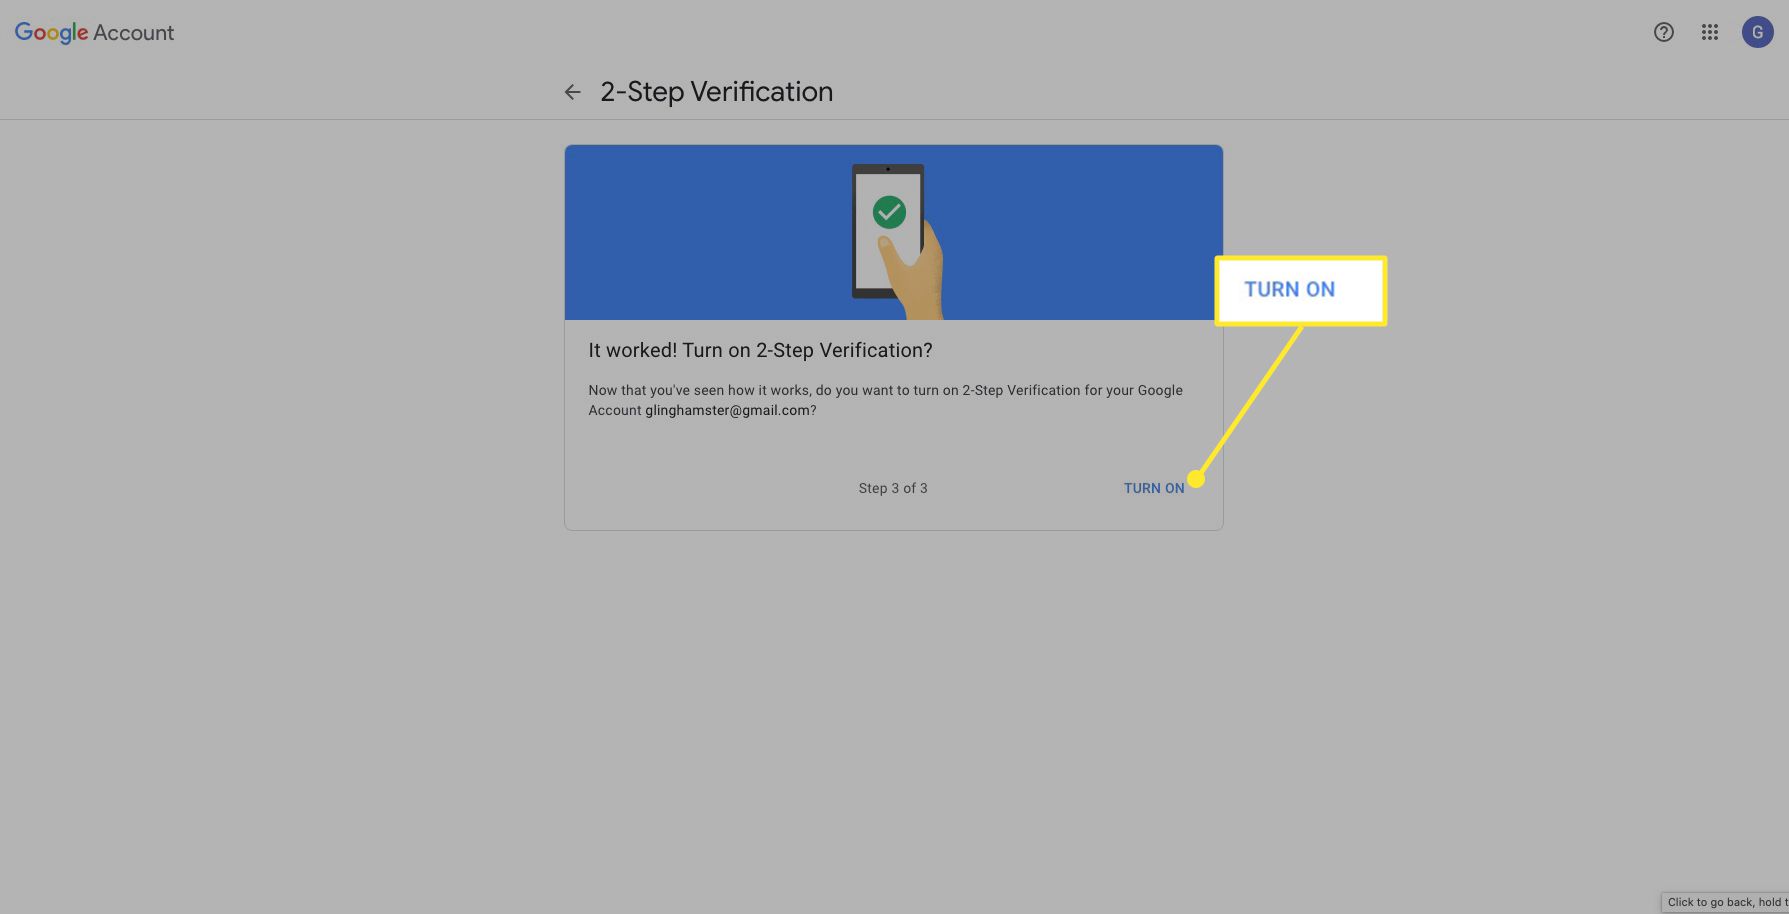 Scherm voor authenticatie in twee stappen van Google met 